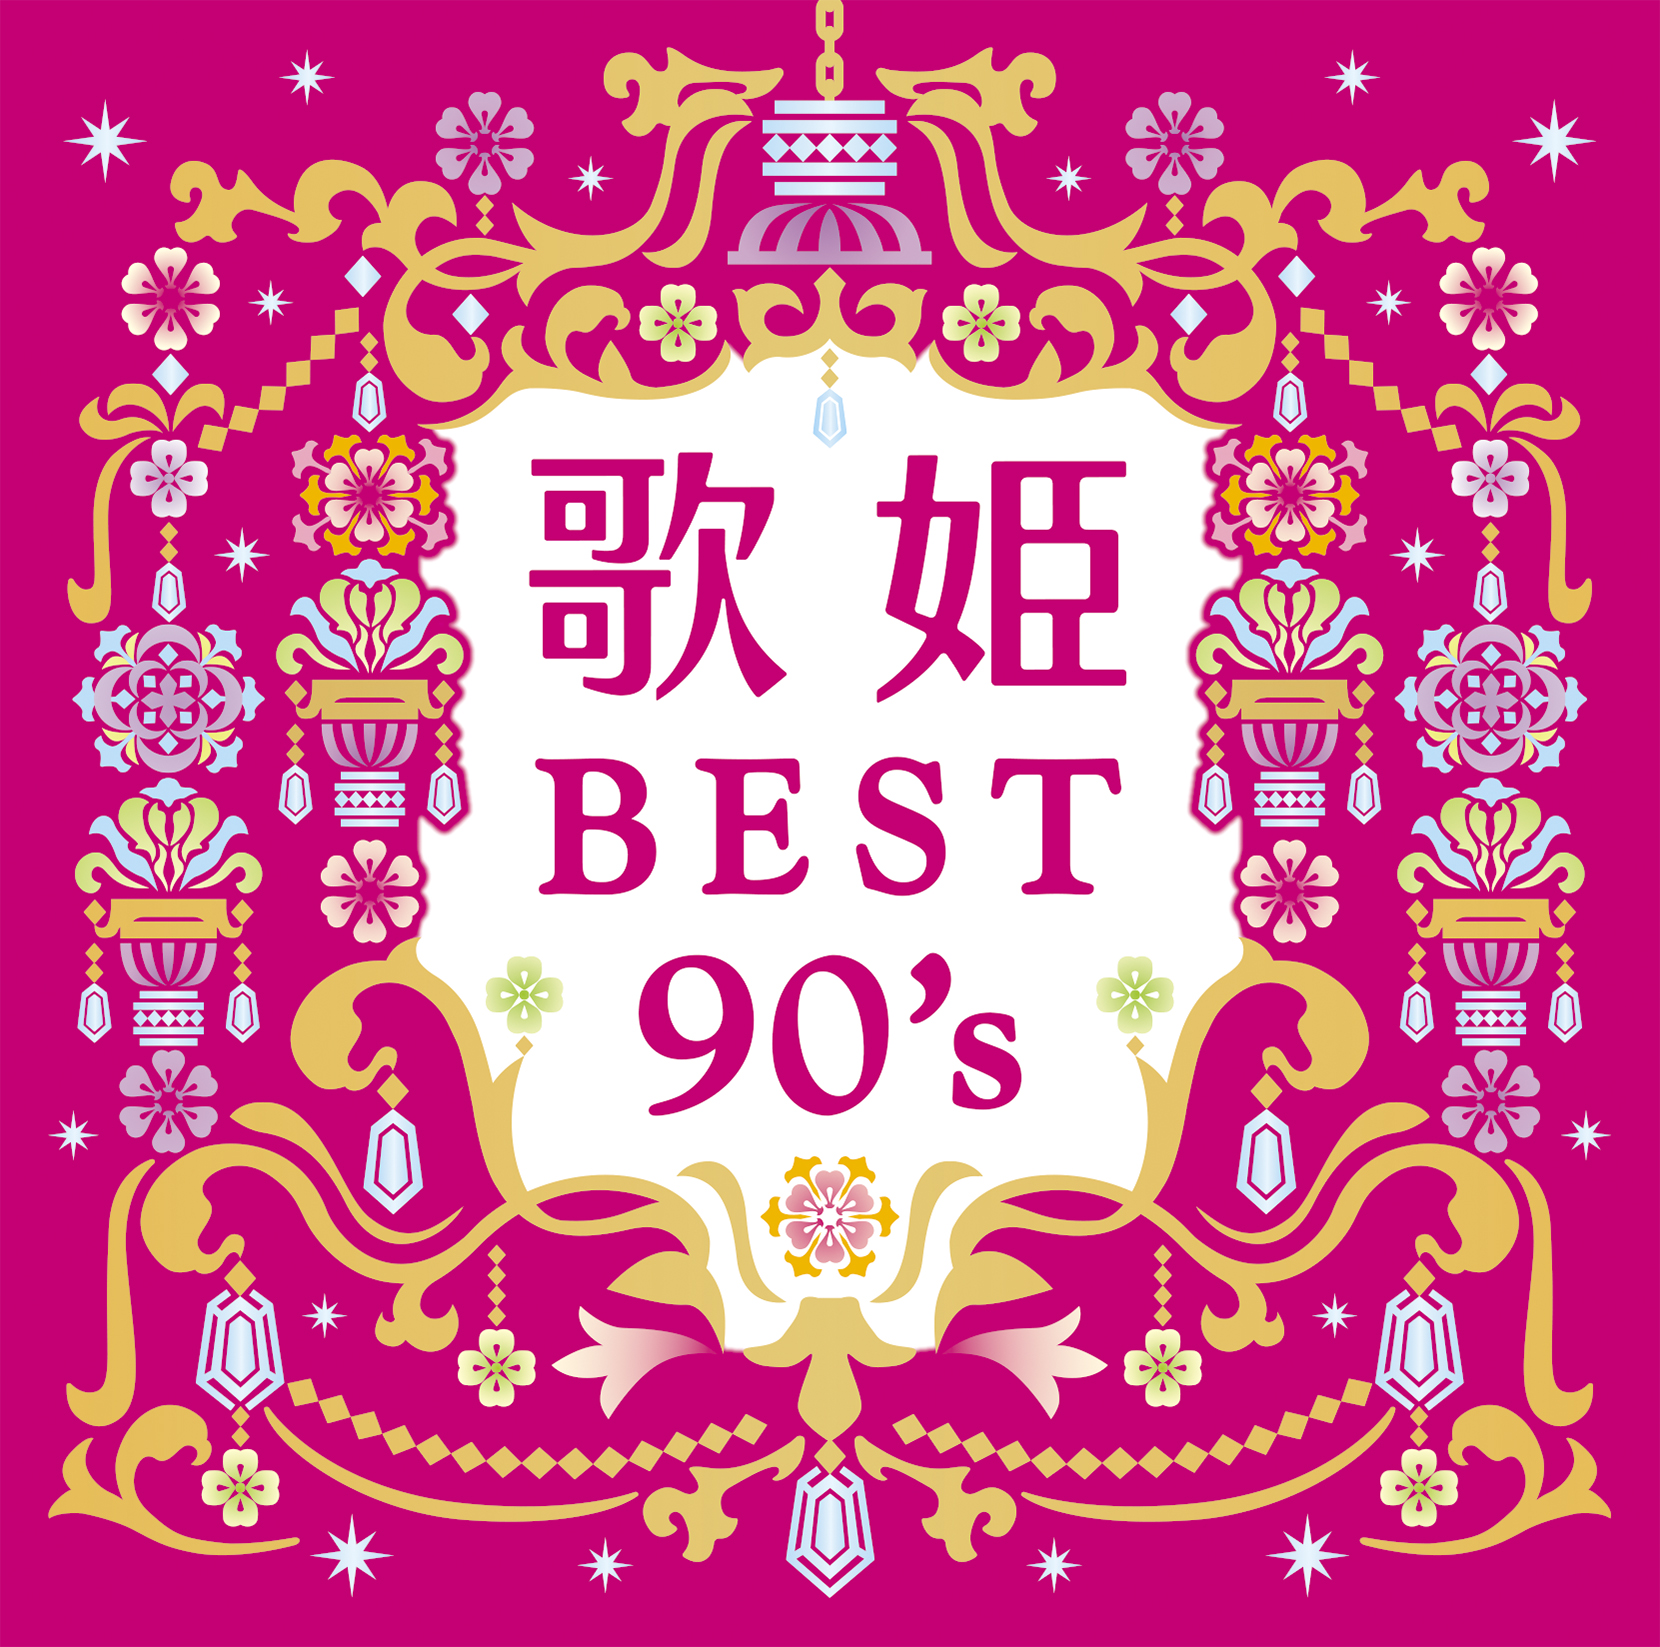 まさに私の青春です！『歌姫～BEST 90's～』8月26日発売決定！！｜株式会社ソニー・ミュージックレーベルズ レガシープラスのプレスリリース